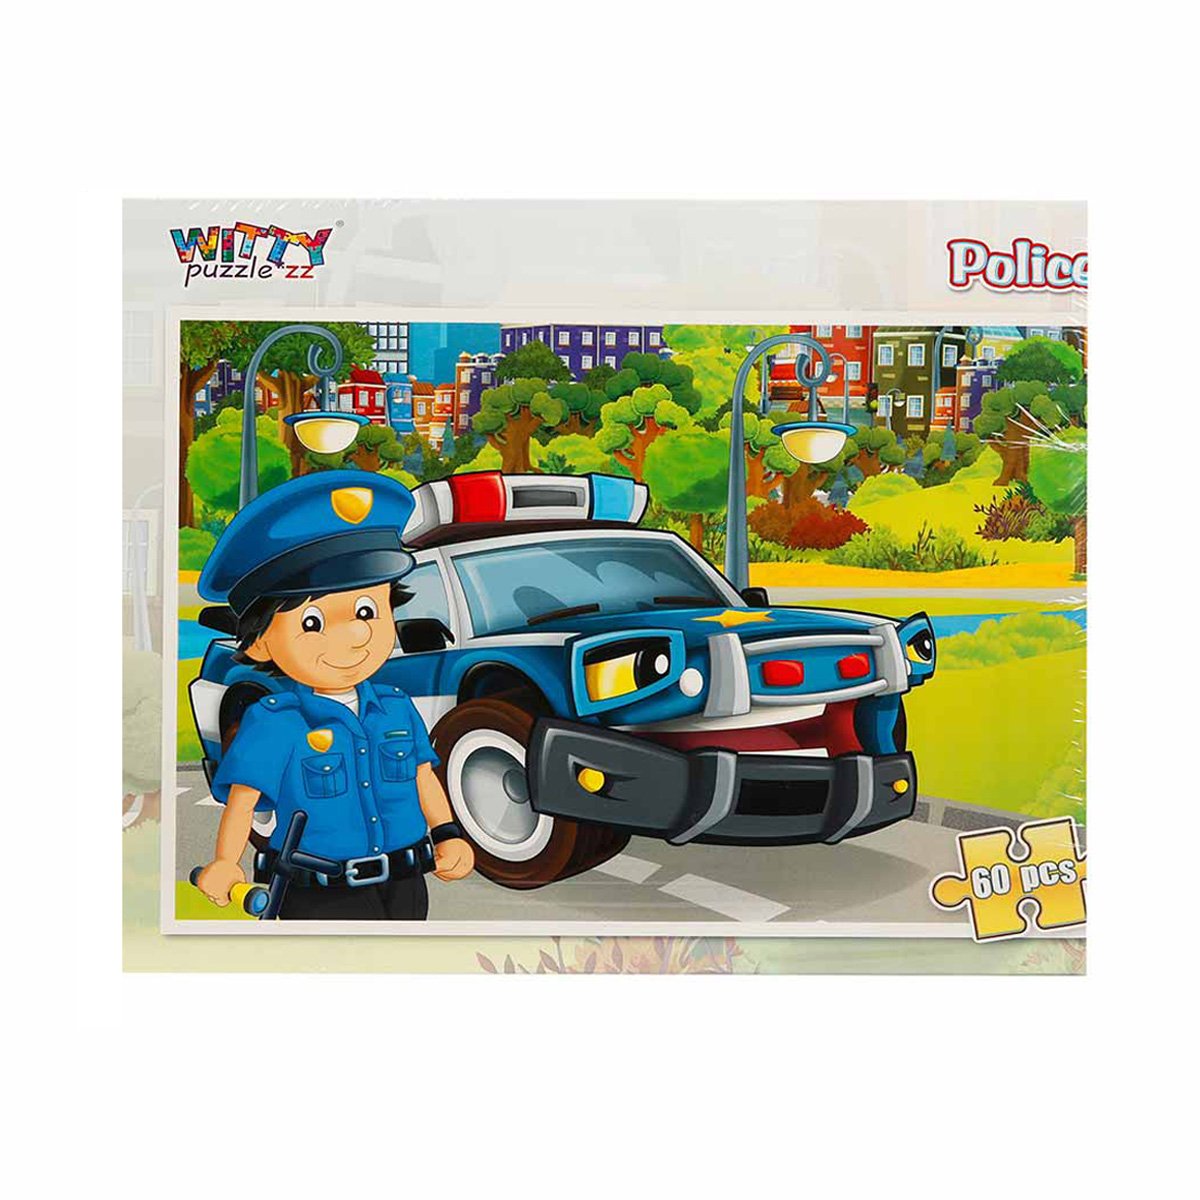 Poze Puzzle Witty Puzzlezz, Politie, 60 piese noriel.ro 